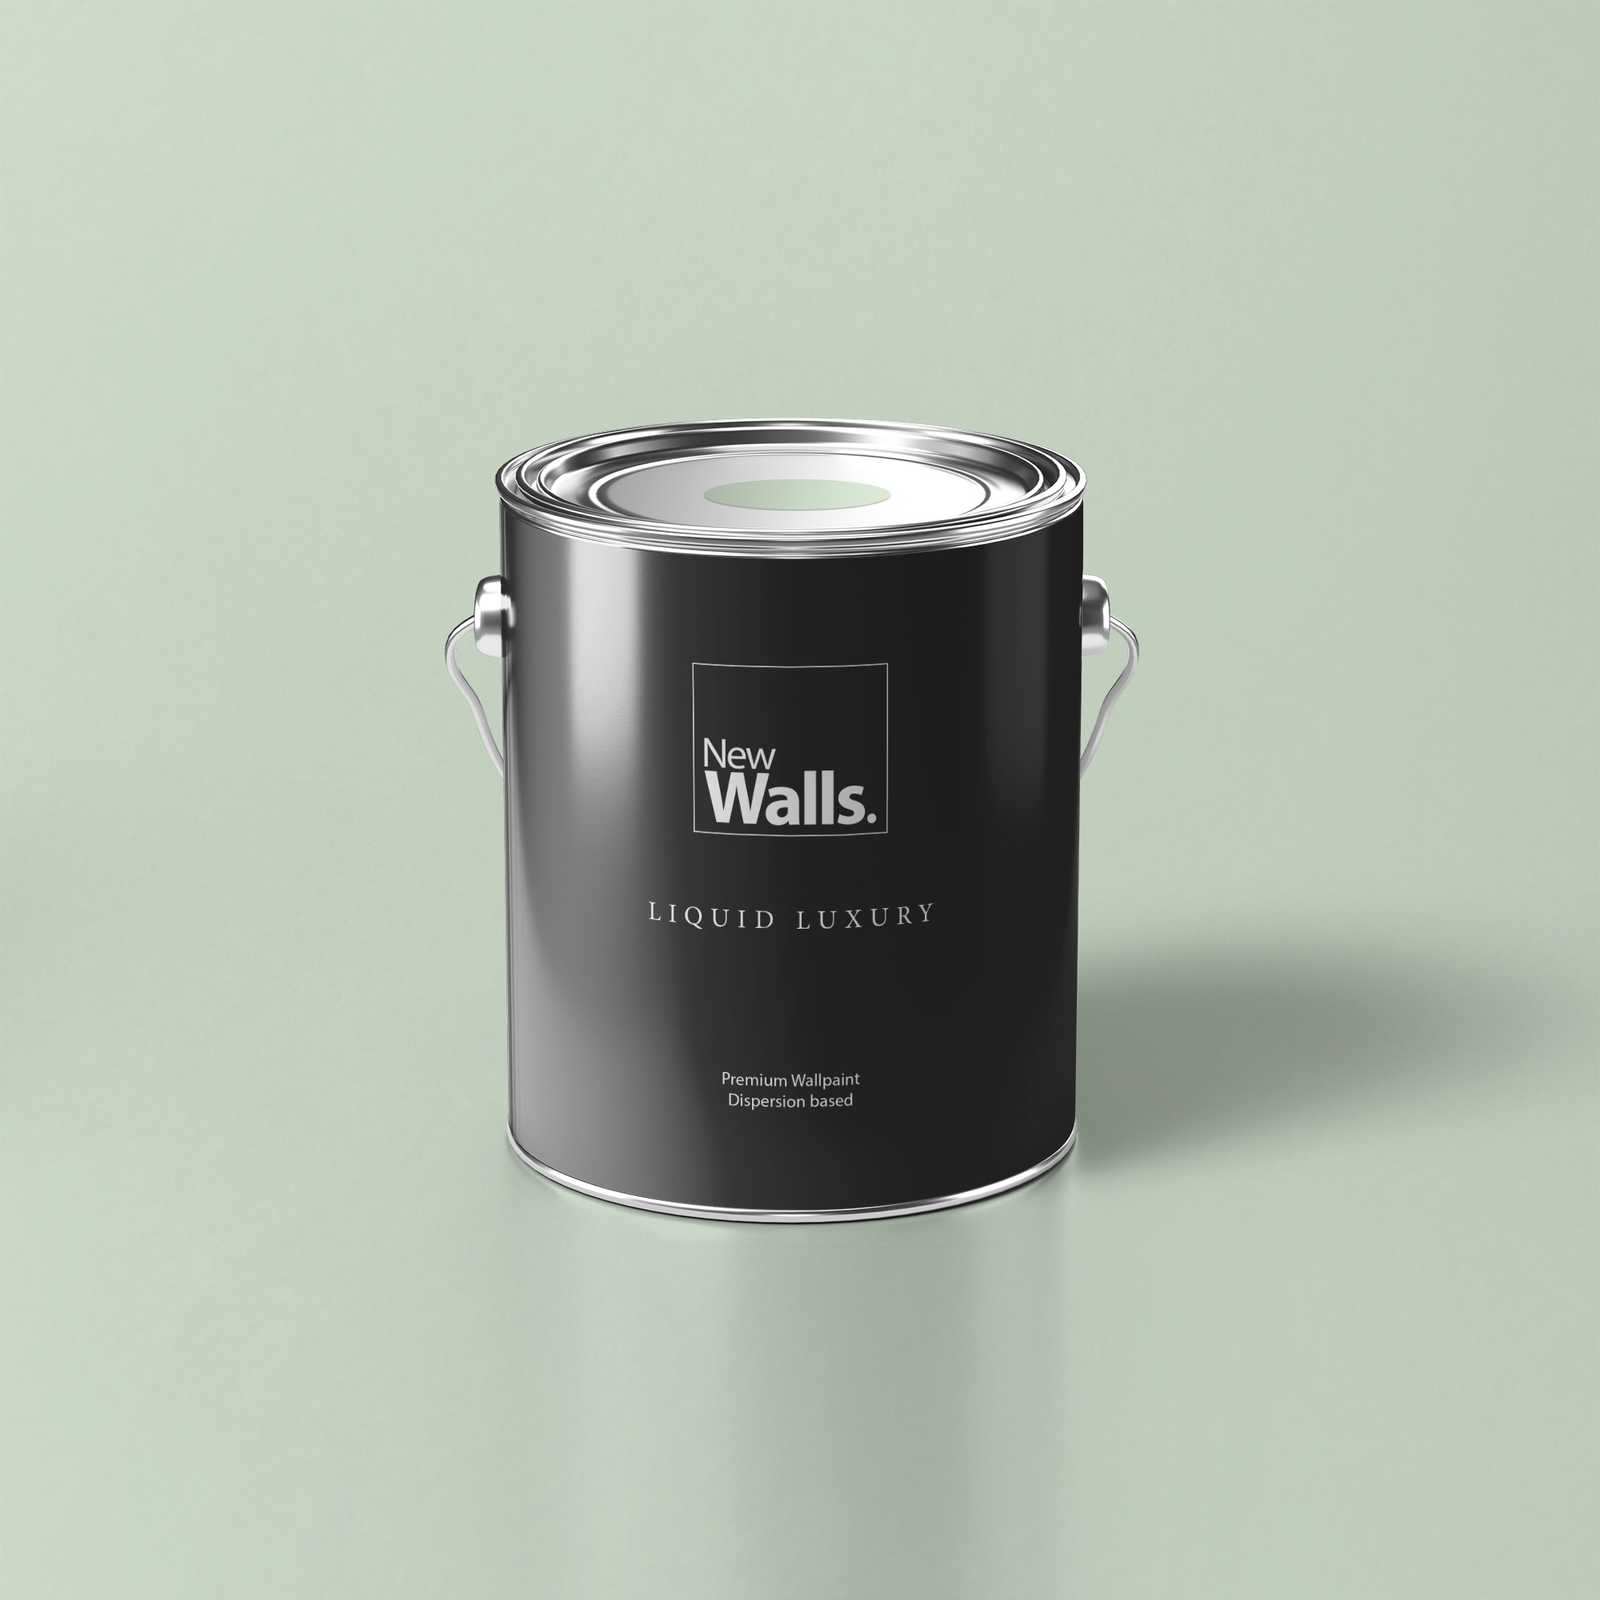 Premium Wall Paint Awakening Pastel Green »Sweet Sage« NW400 – 5 litre
